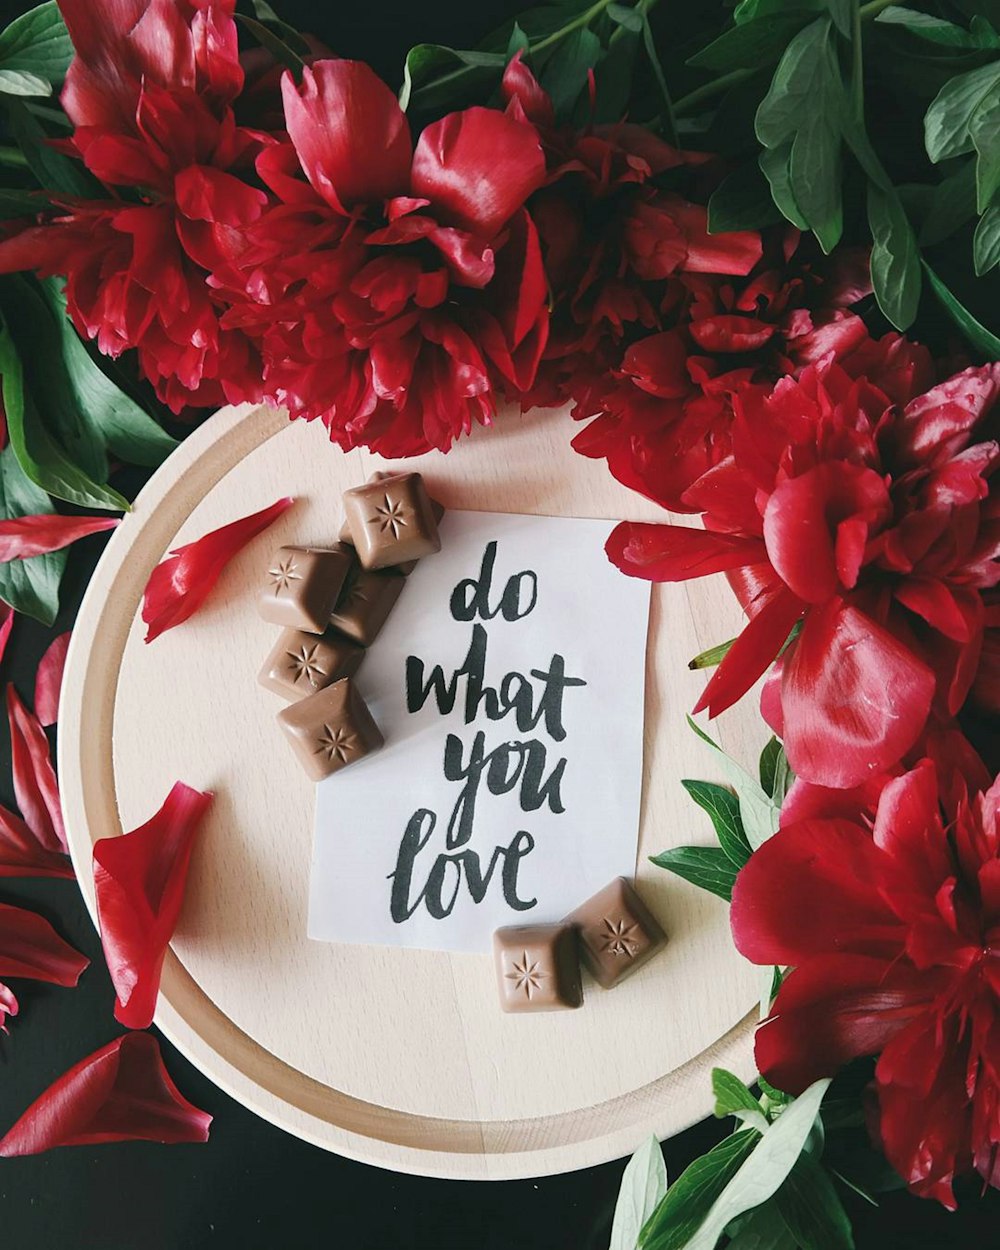 Una nota su un pezzo di carta sopra un piatto accanto a fiori rossi che recita "Fai ciò che ami".